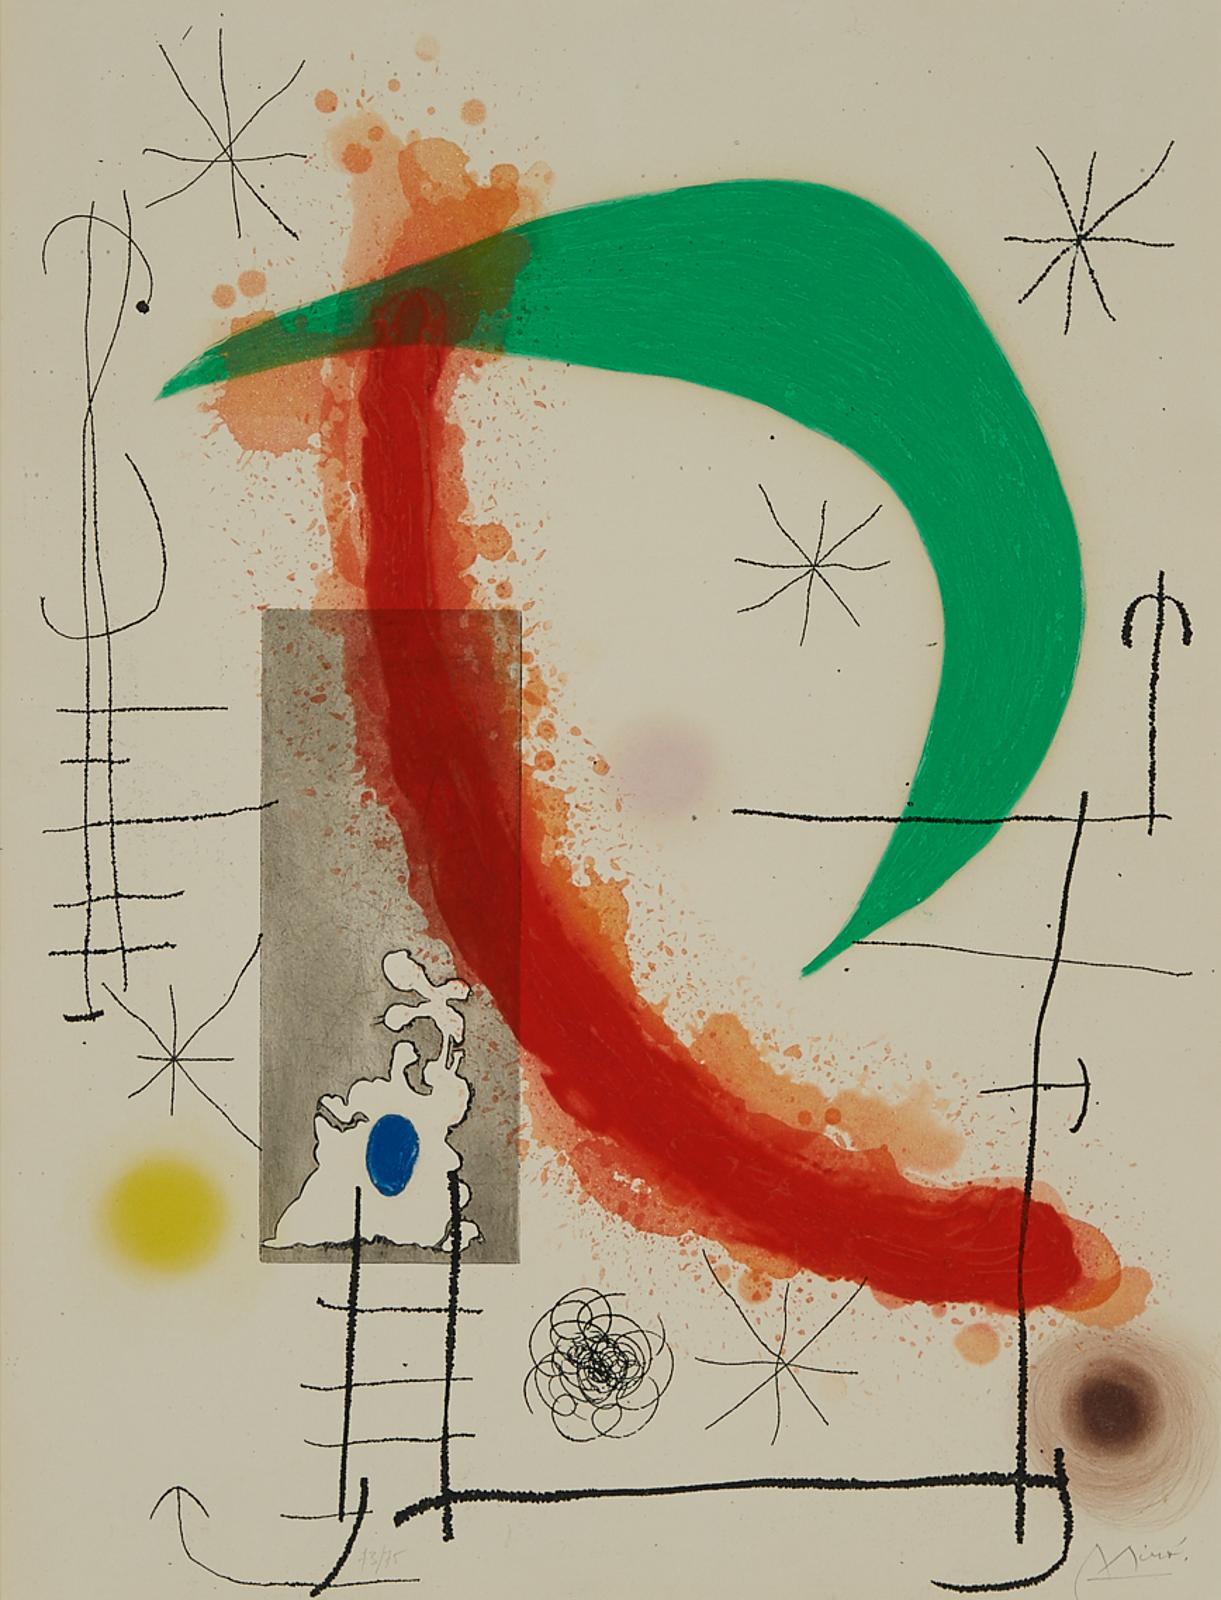 Joan Miró (1893-1983) - L'ESCALADE, 1969 [DUPIN, 494]